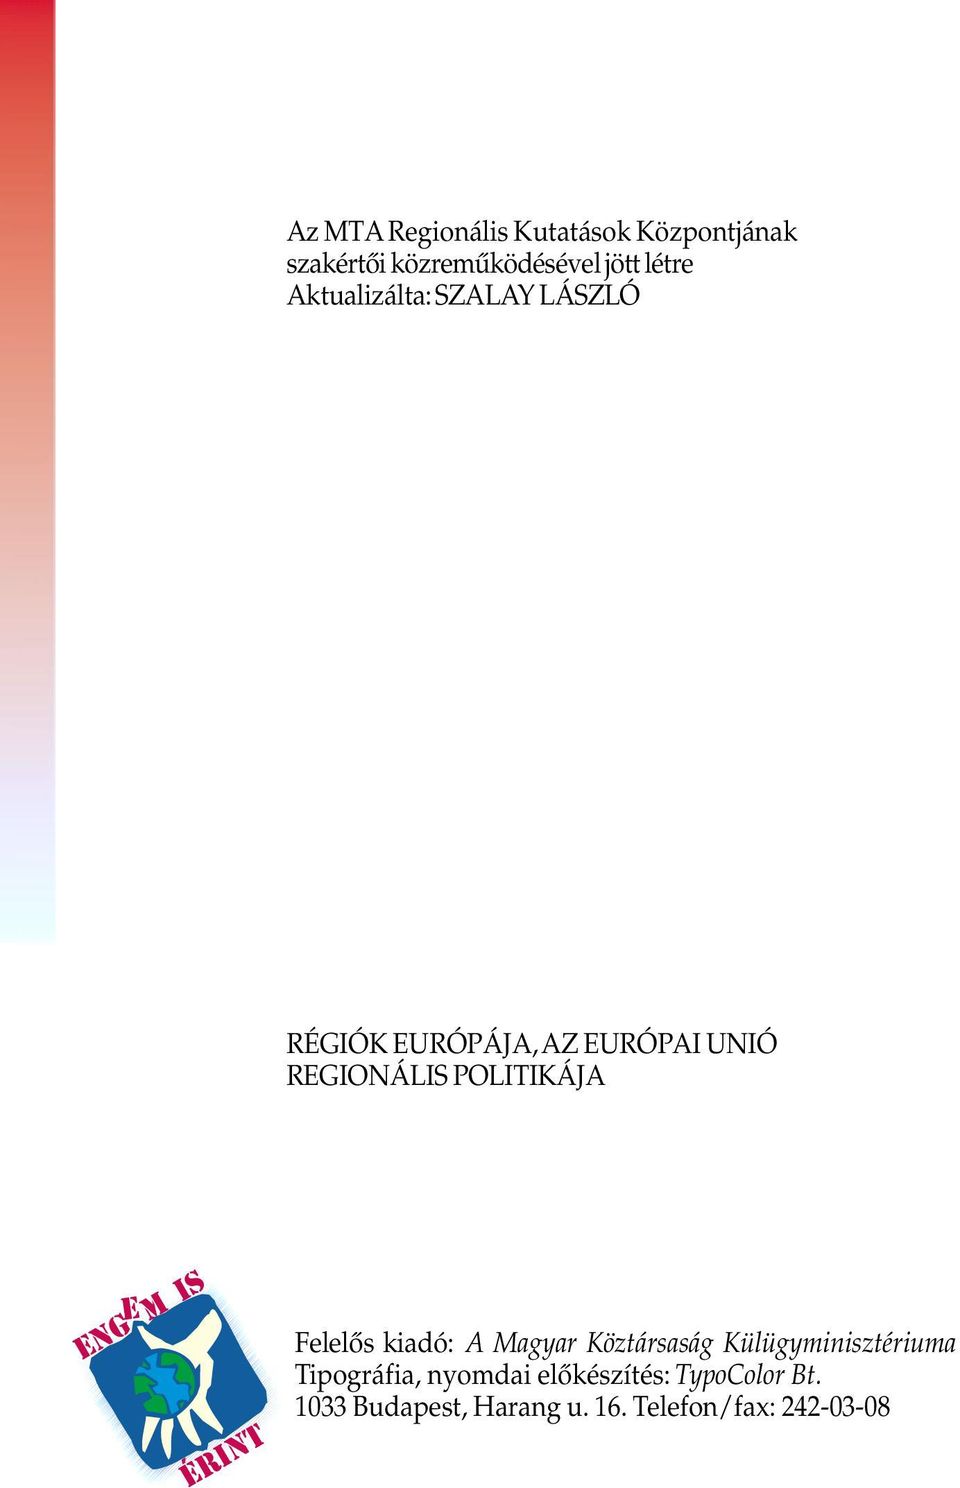 kiadó: A Magyar Köztársaság Külügyminisztériuma Tipográfia, nyomdai elôkészítés: TypoColor Bt.